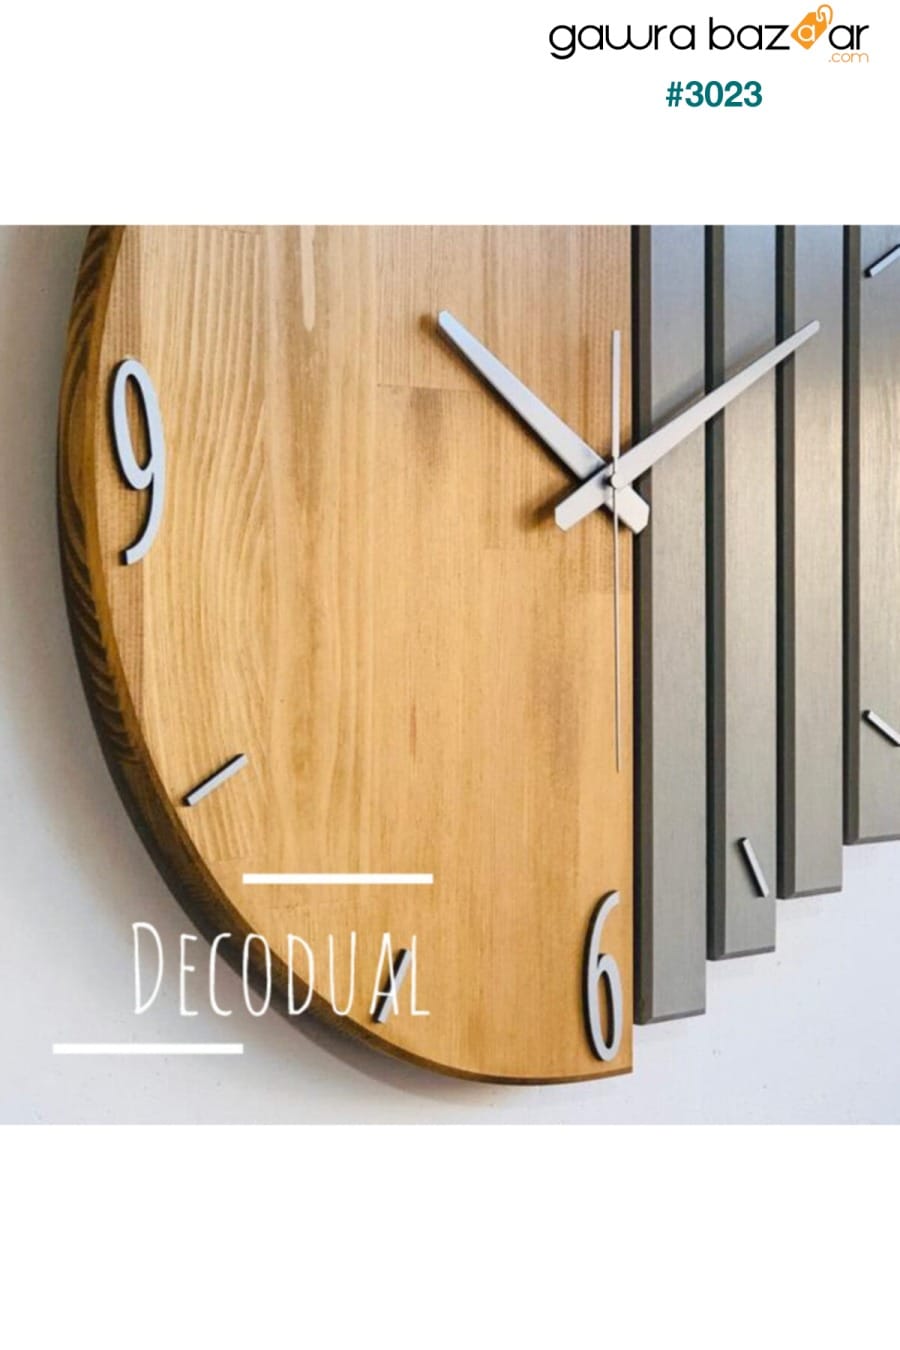 ساعة حائط مصنوعة يدويًا من الخشب الصلب 40x40 سم تبغ ورمادي منك DECODUAL 2